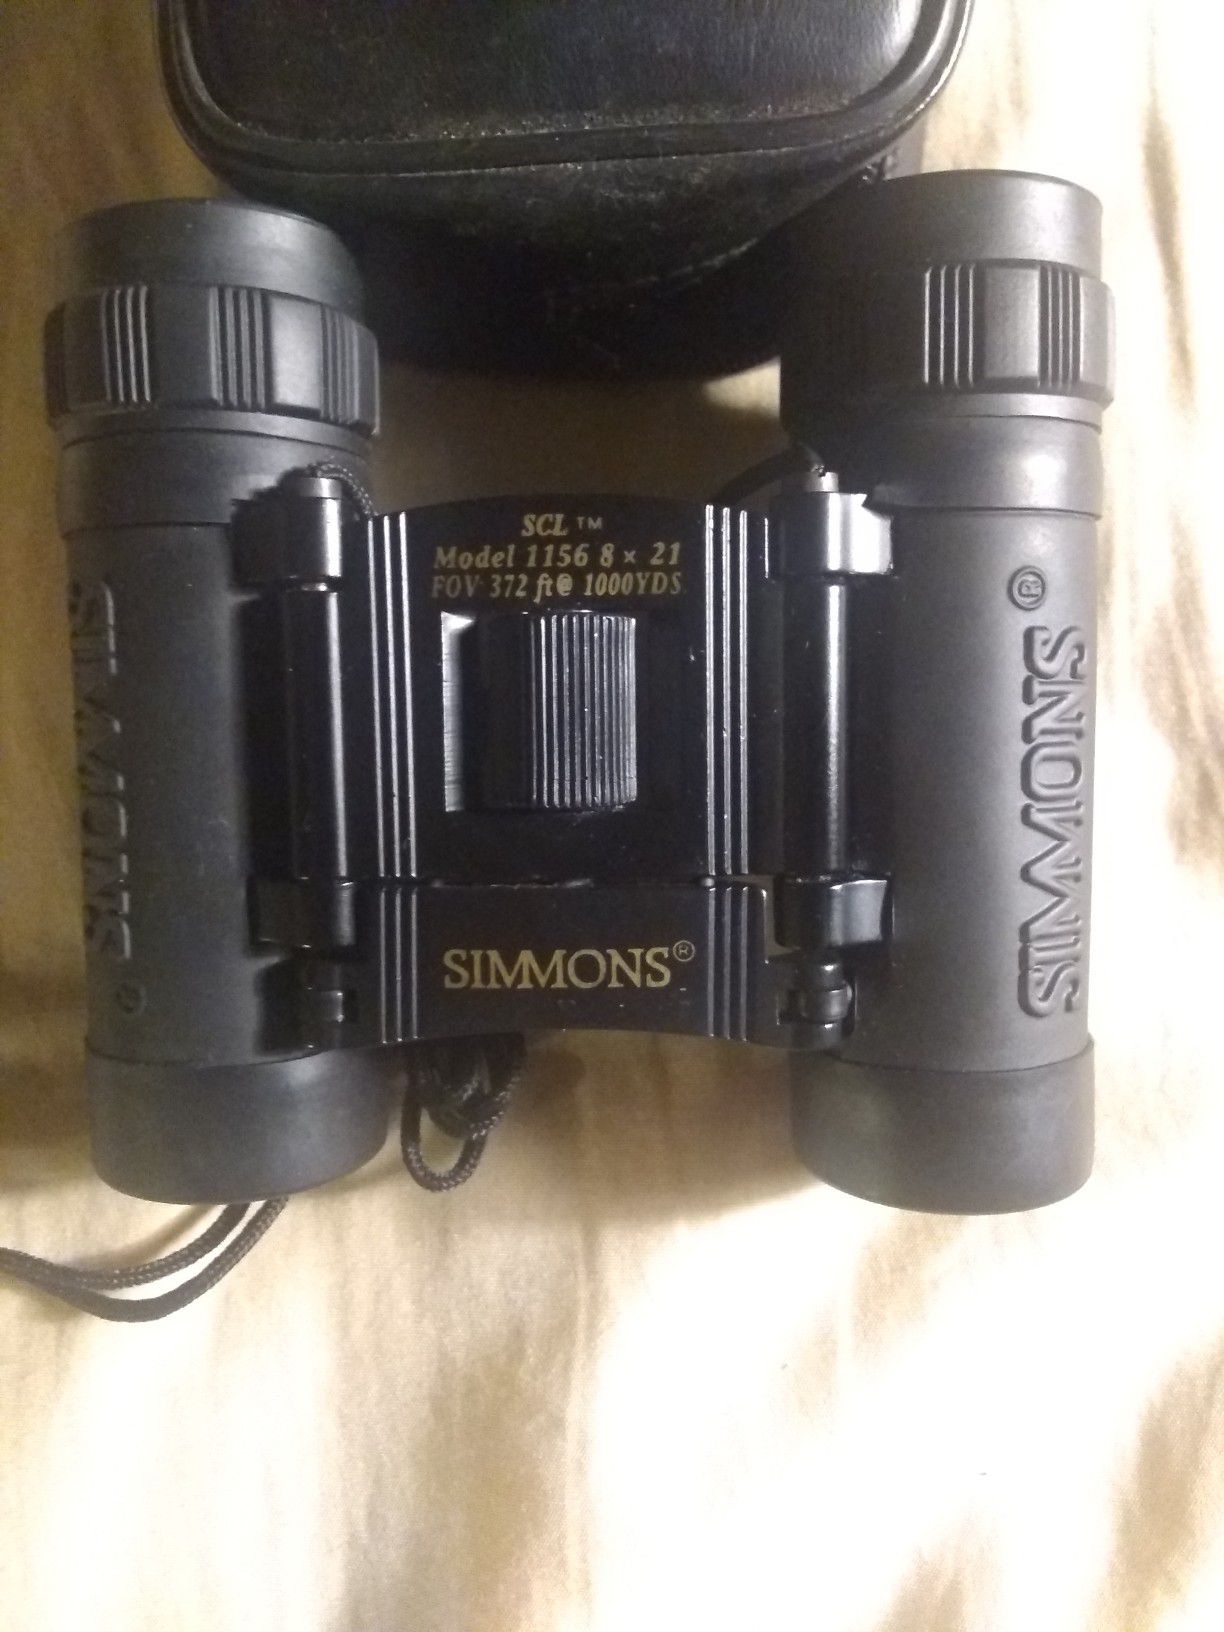 Simmons Mini-binoculars